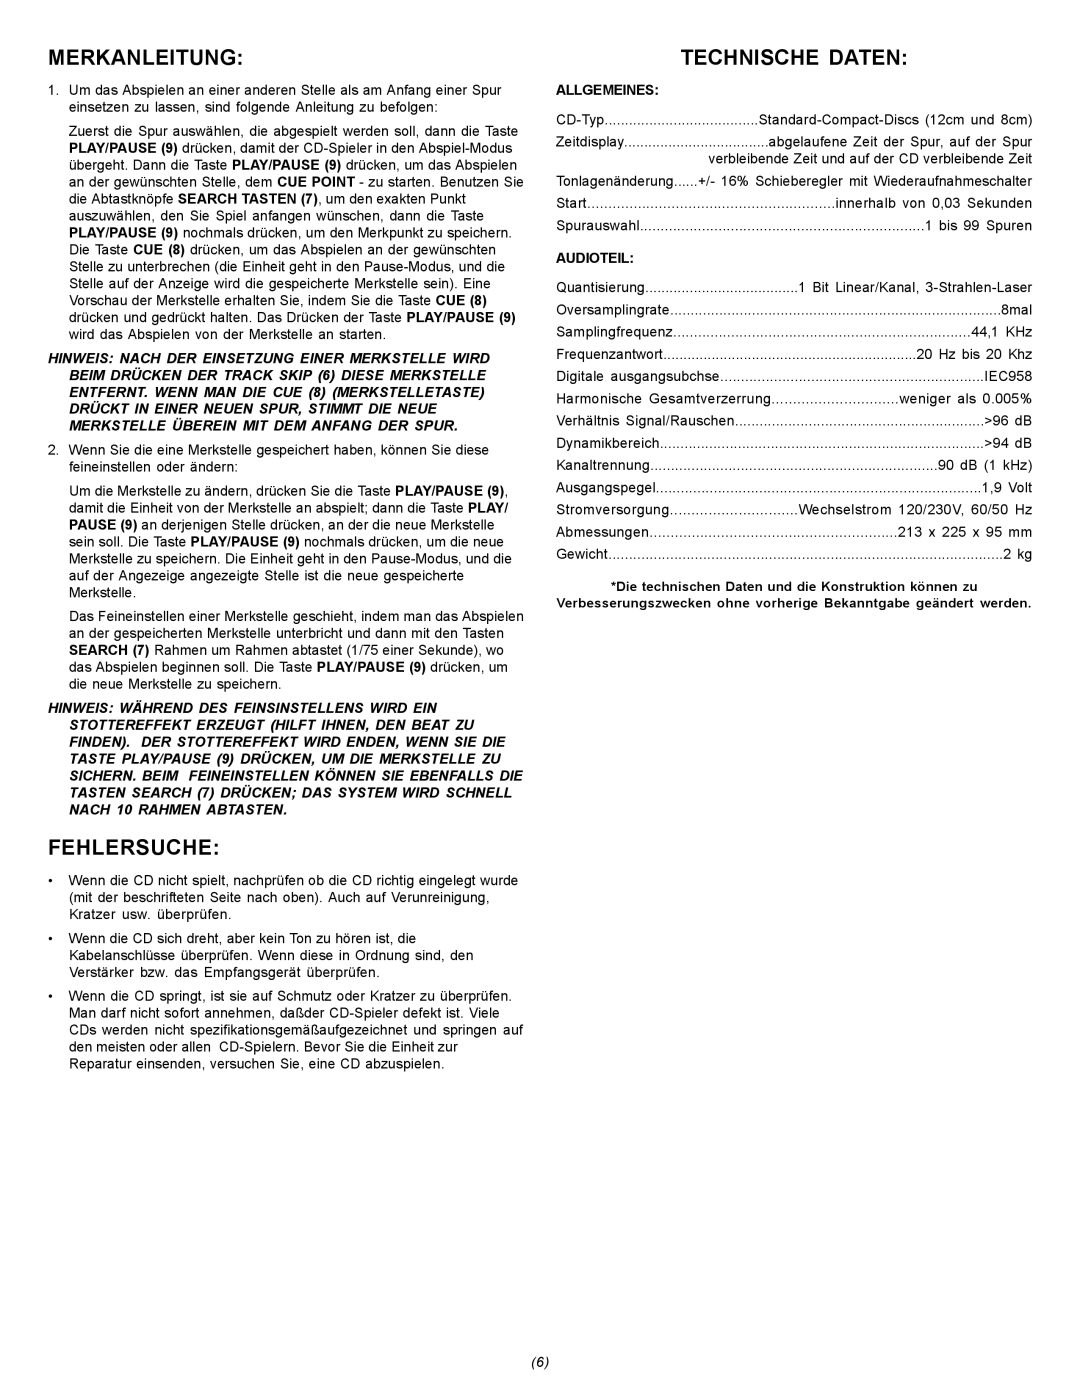 Gemini CDJ-15 manual Merkanleitung, Fehlersuche, Technische Daten, Allgemeines, Audioteil 